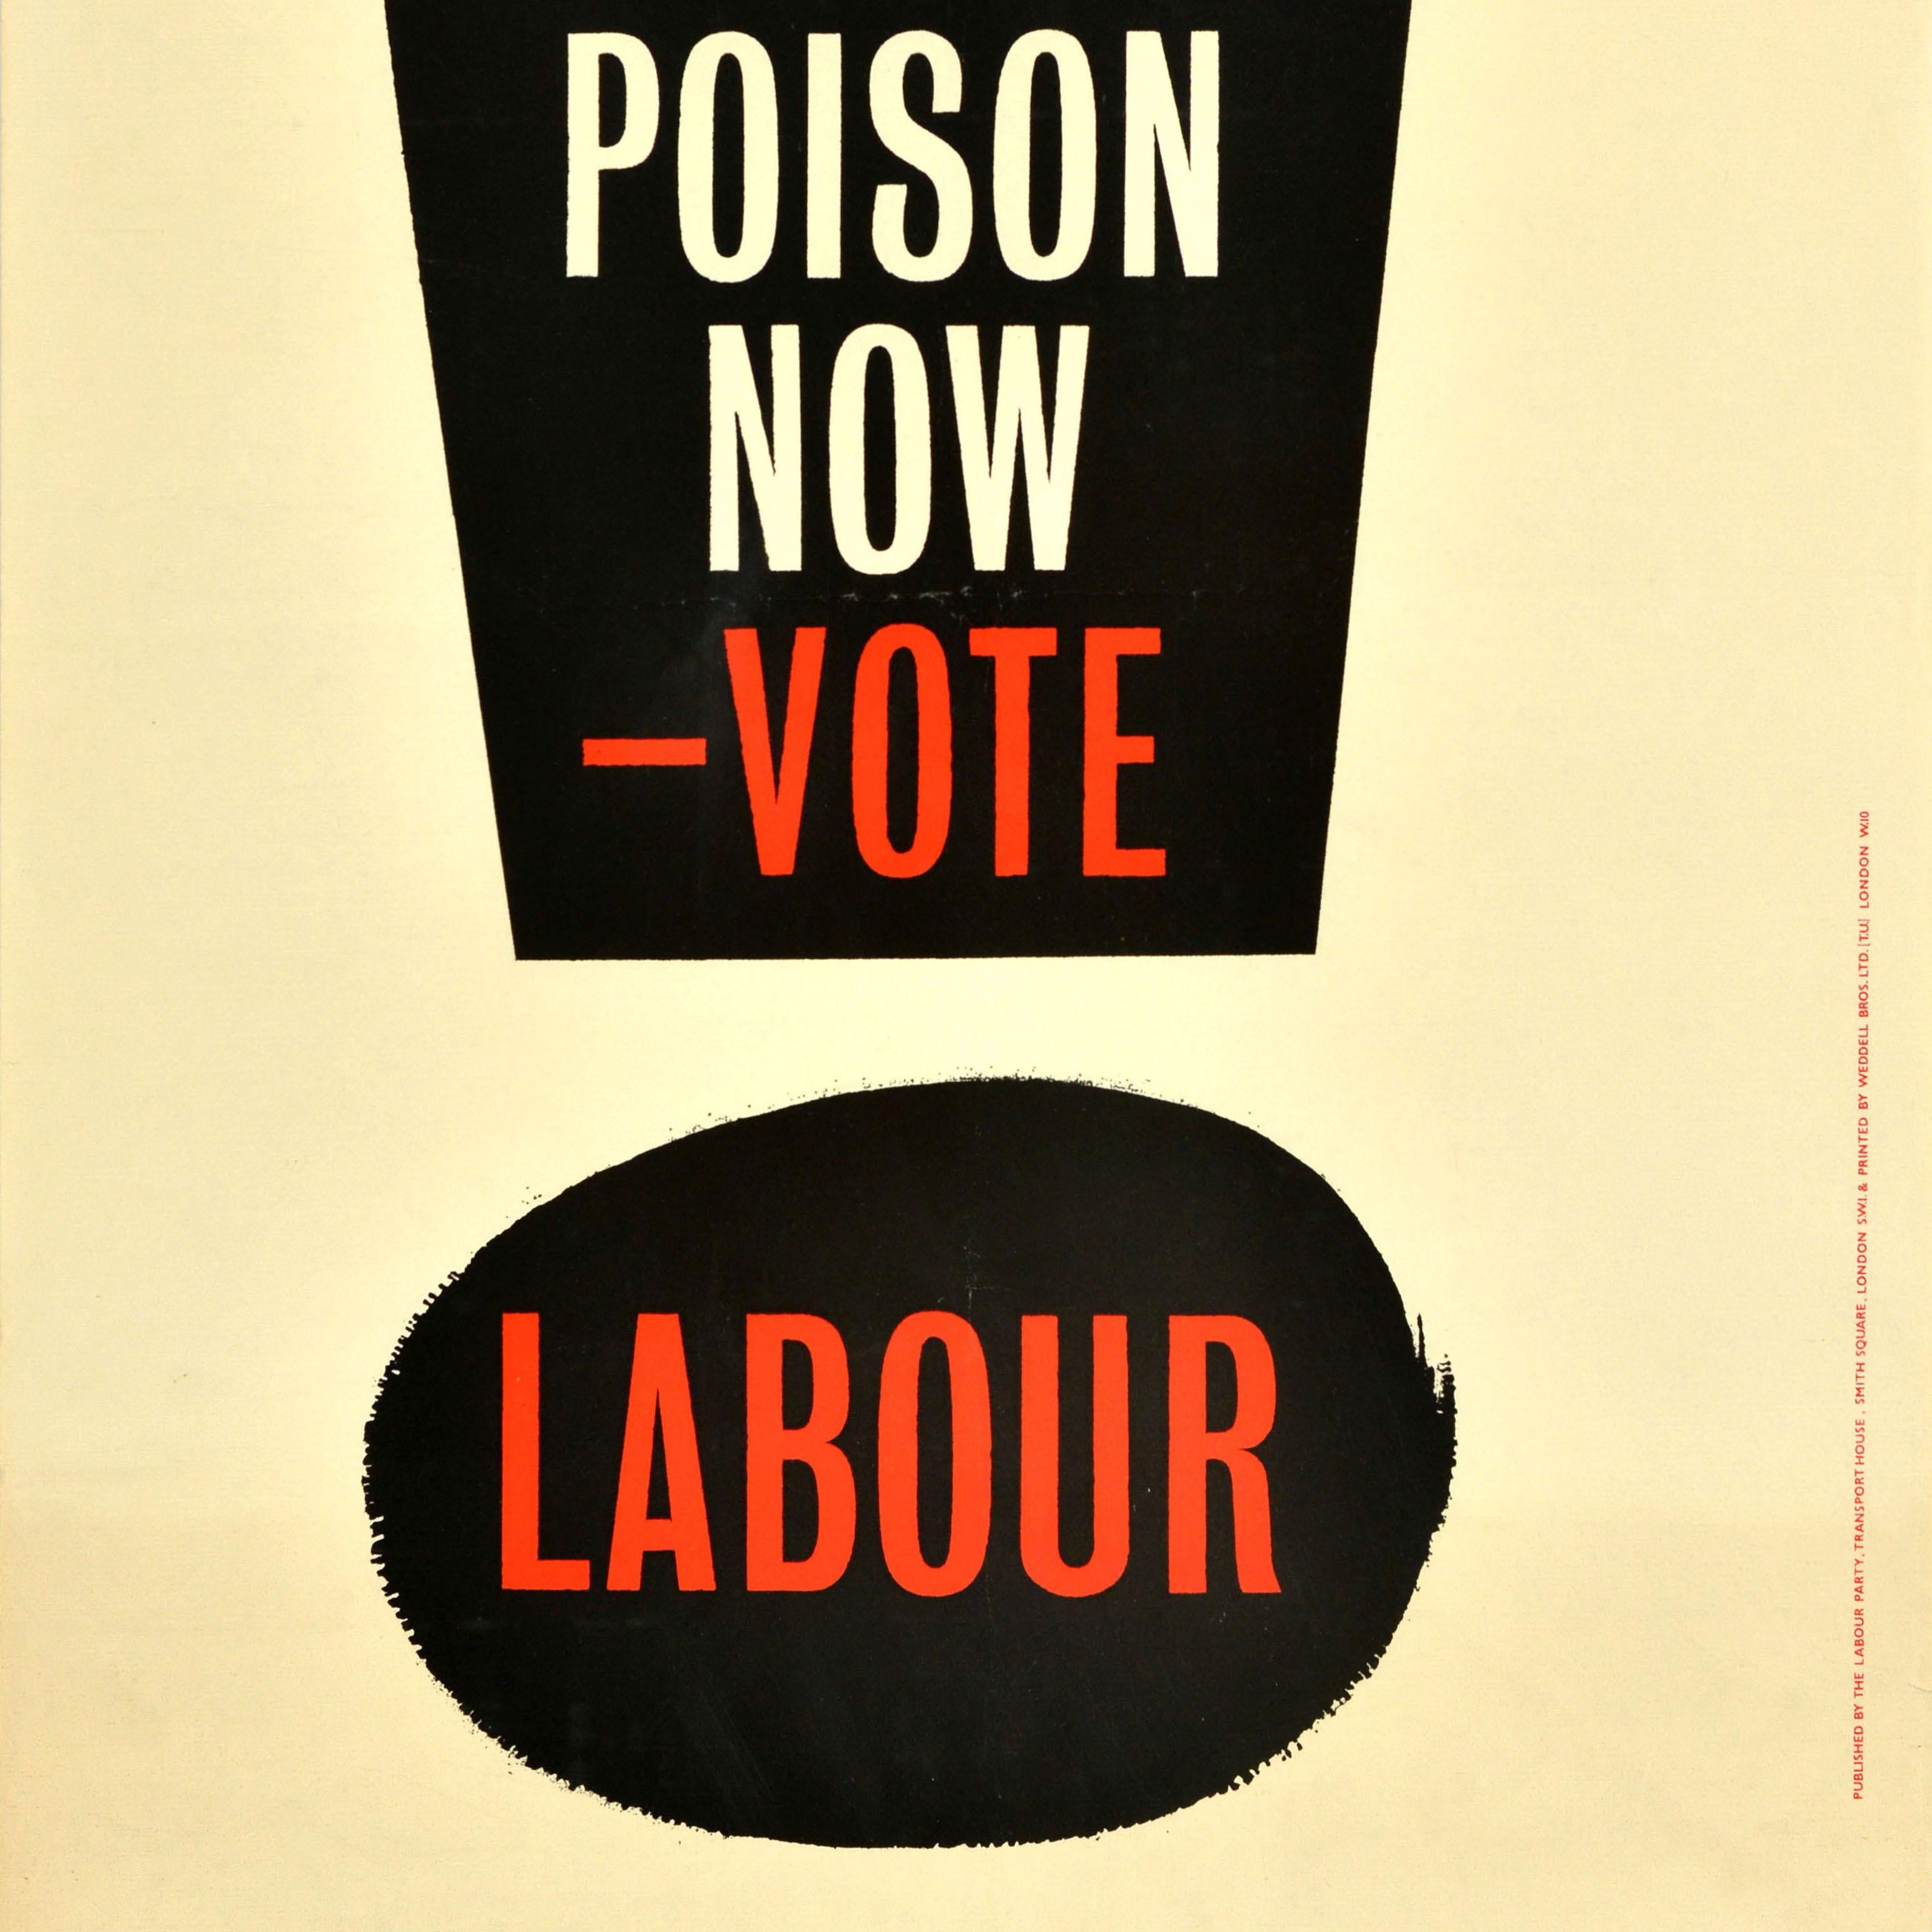 Original Vintage Election Propaganda Poster Stop H Bomb Poison Vote Labour Party For Sale 1